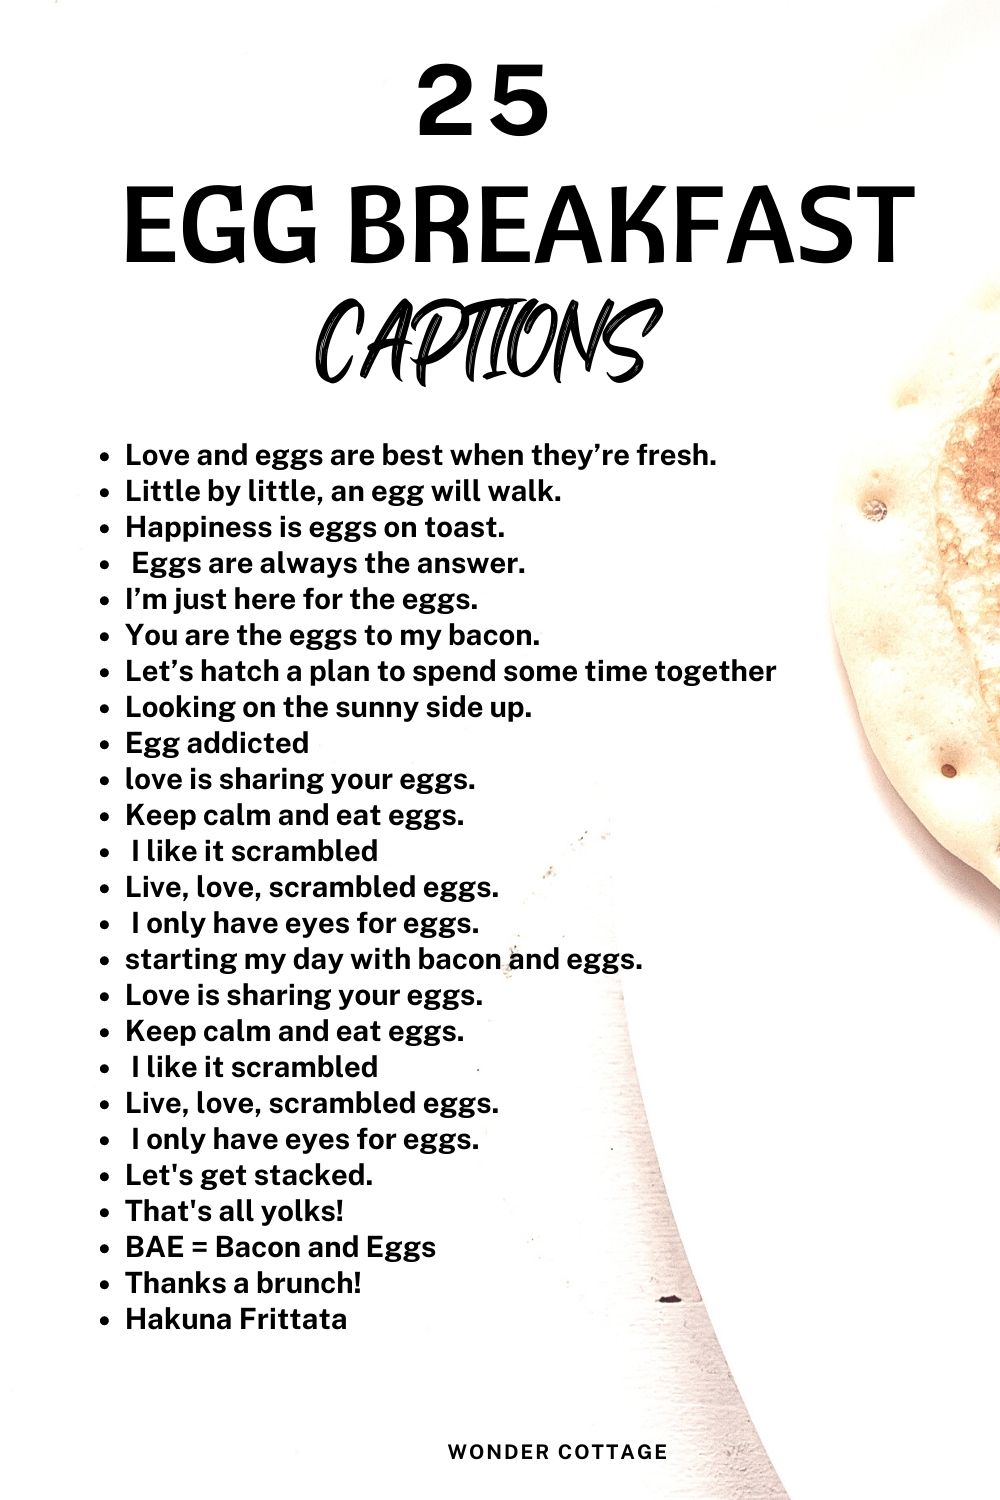 Egg breakfast captions